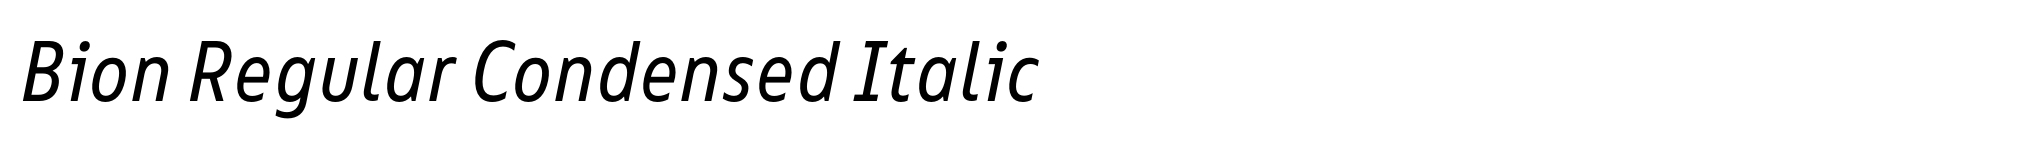 Bion Regular Condensed Italic image